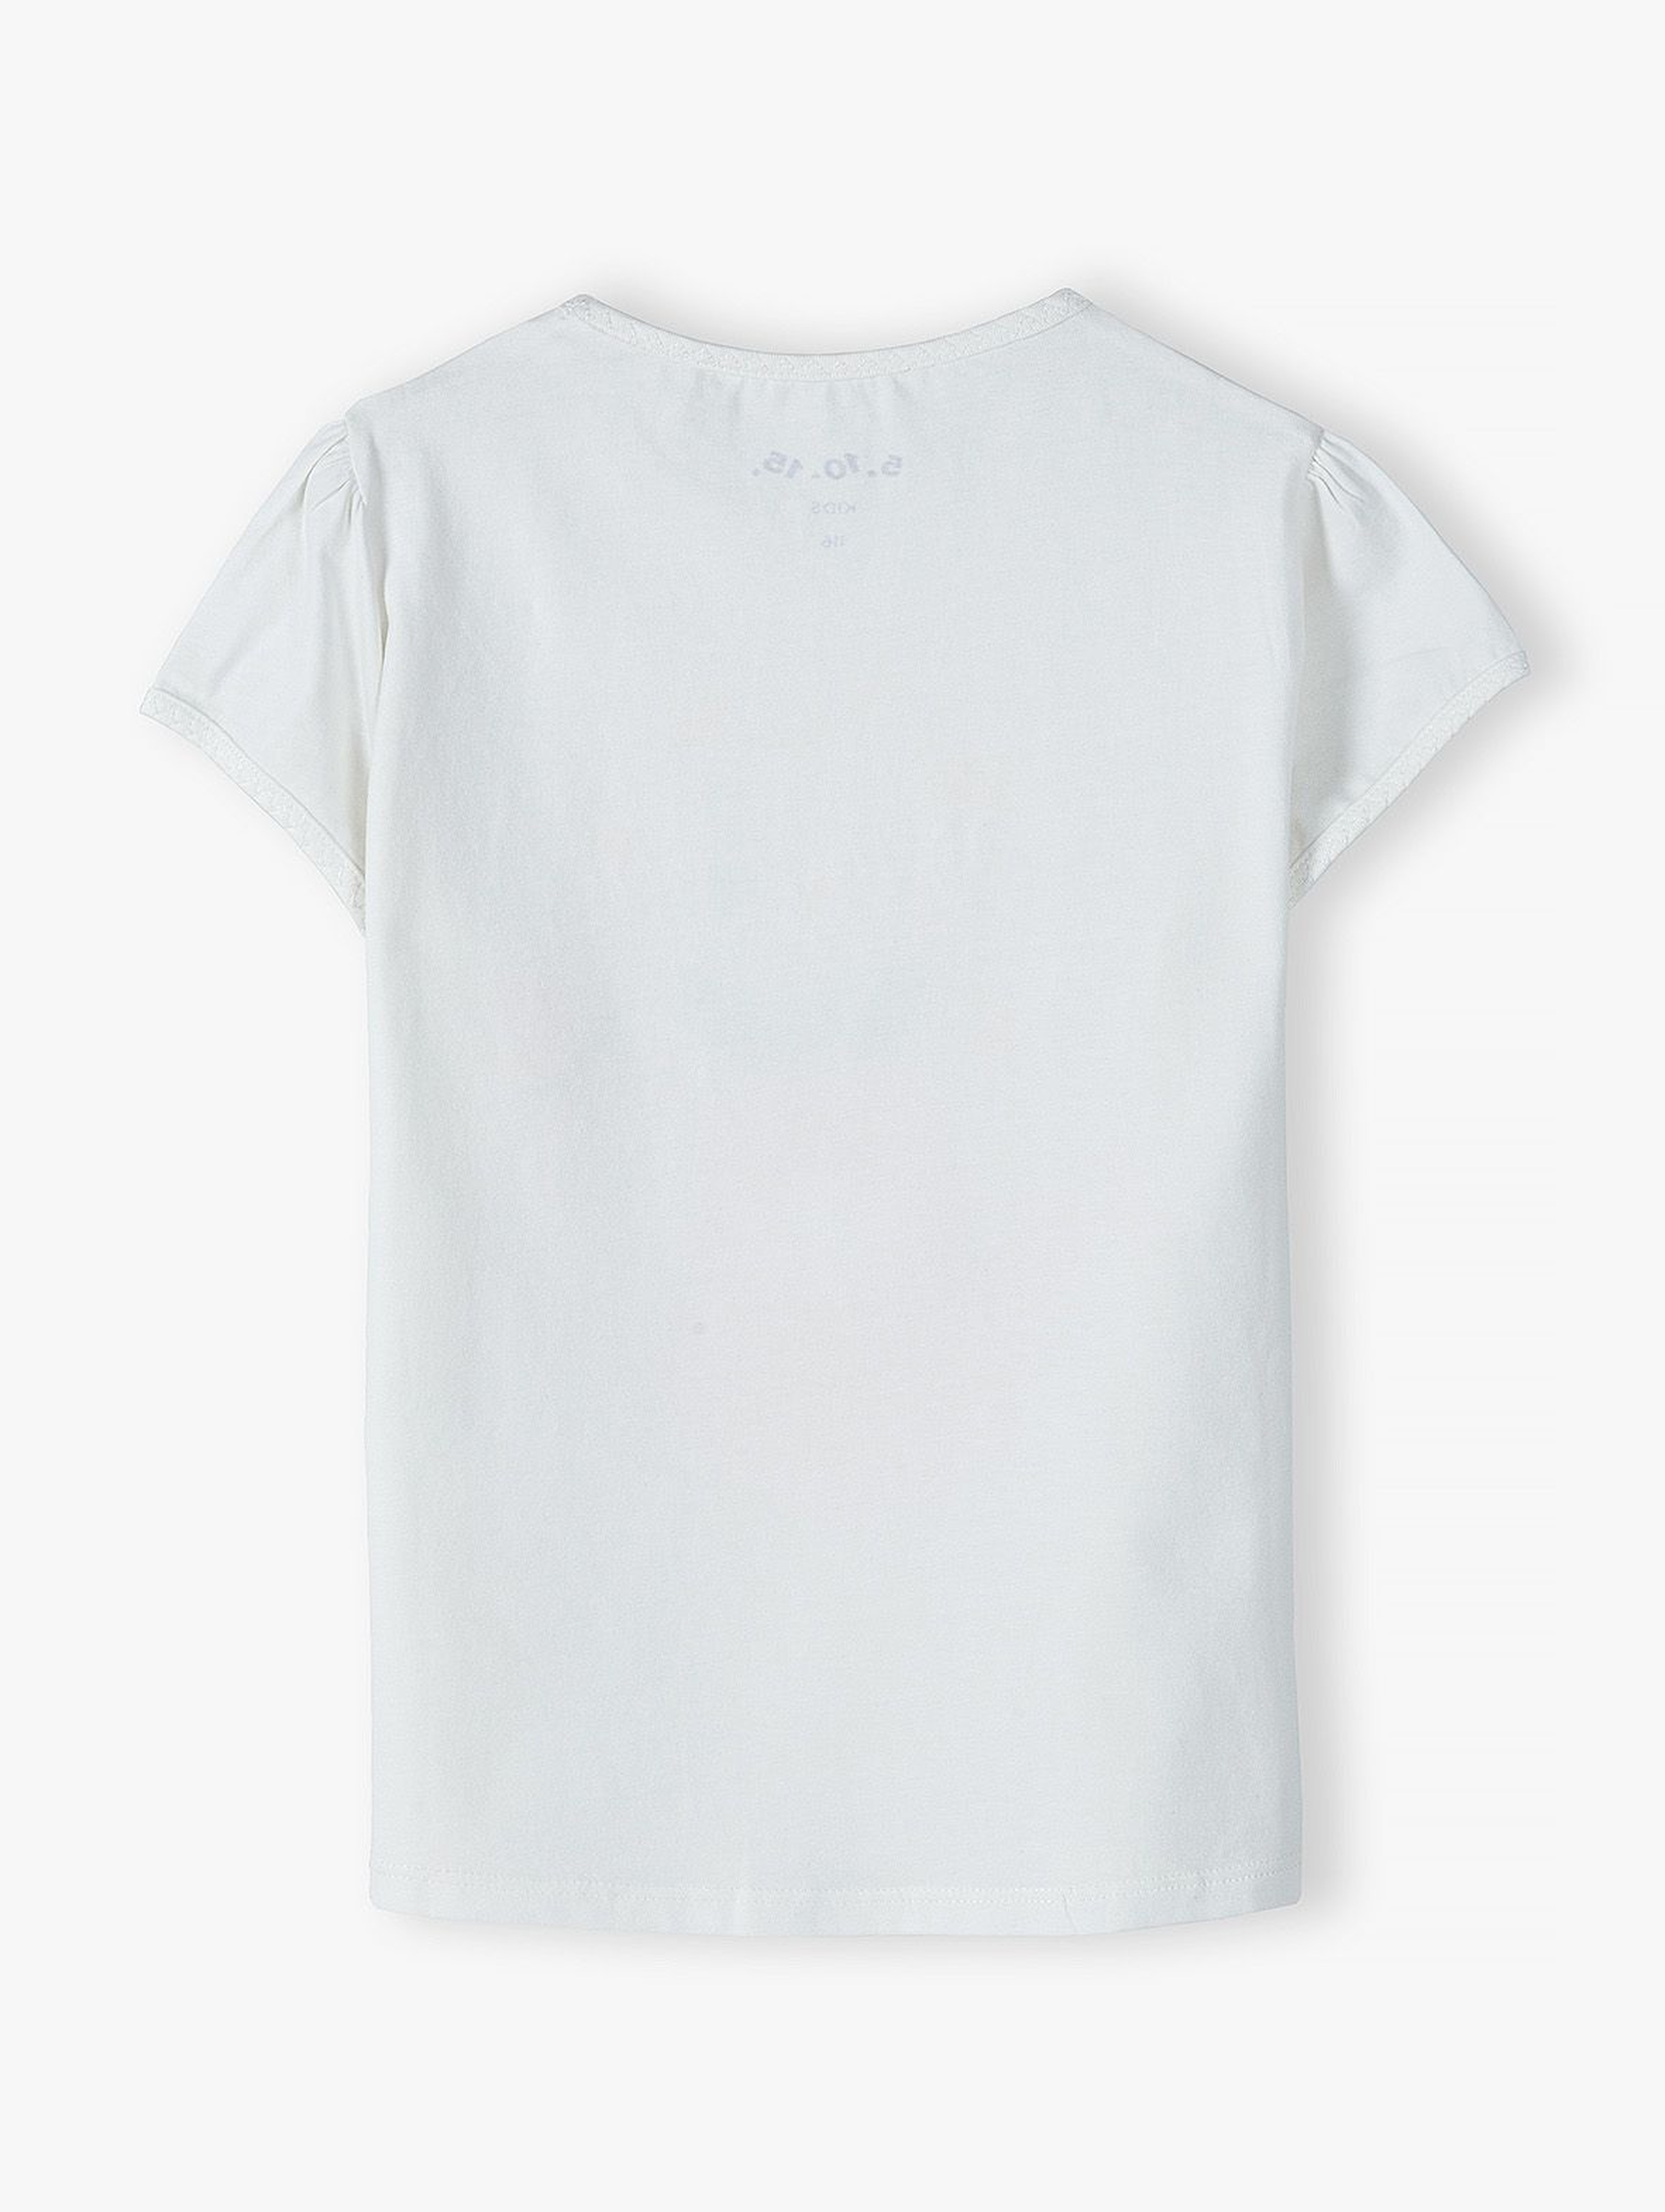 Biały t-shirt z kolorowym nadrukiem